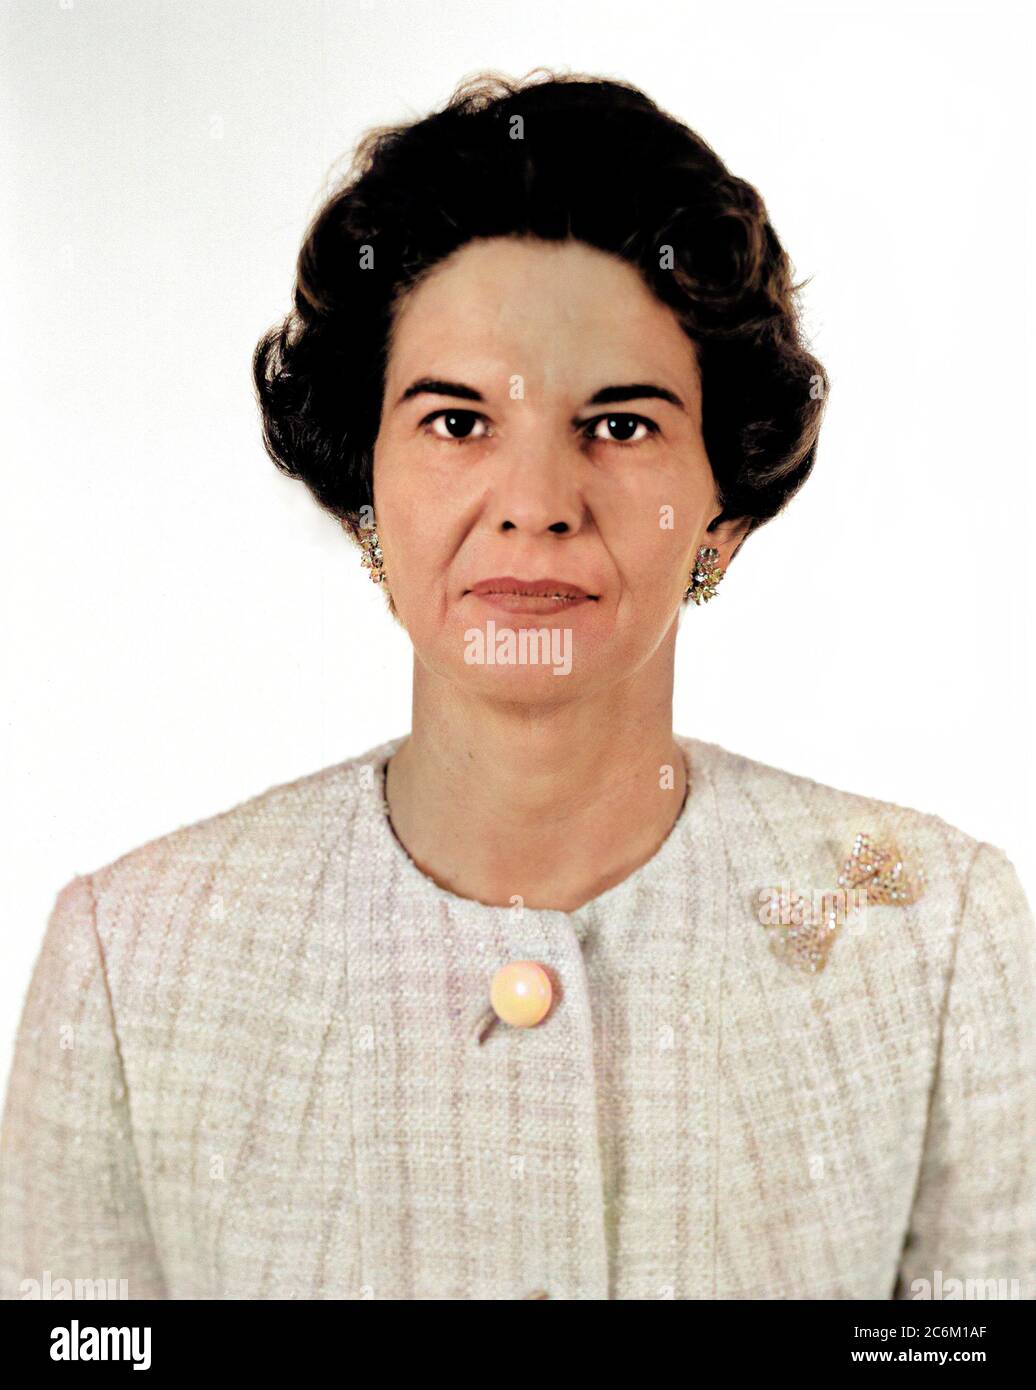 1964, USA: Die amerikanische Elektroingenieurin Frau KITTY Wingfield O'BRIEN JOYNER (1916 - 1993) der NASA, bei der Arbeit, Experte für Elektronik, am LANGLEY FORSCHUNGSZENTRUM. Erinnert wie die erste Frau Ingenieur am Memorial Langley Aeronautical Laboratory . DIGITAL EINGEFÄRBT . - NASA - N.A.S. - die Nationale Luft- und Raumfahrtbehörde - foto storiche - foto storica - scienziato - Wissenschaftler - INGEGNERE DONNA - INGEGNERIA ELETTRONICA - DONNE DONNA - AL LAVORO - AERONAUTICA --- Archivio GBB Stockfoto